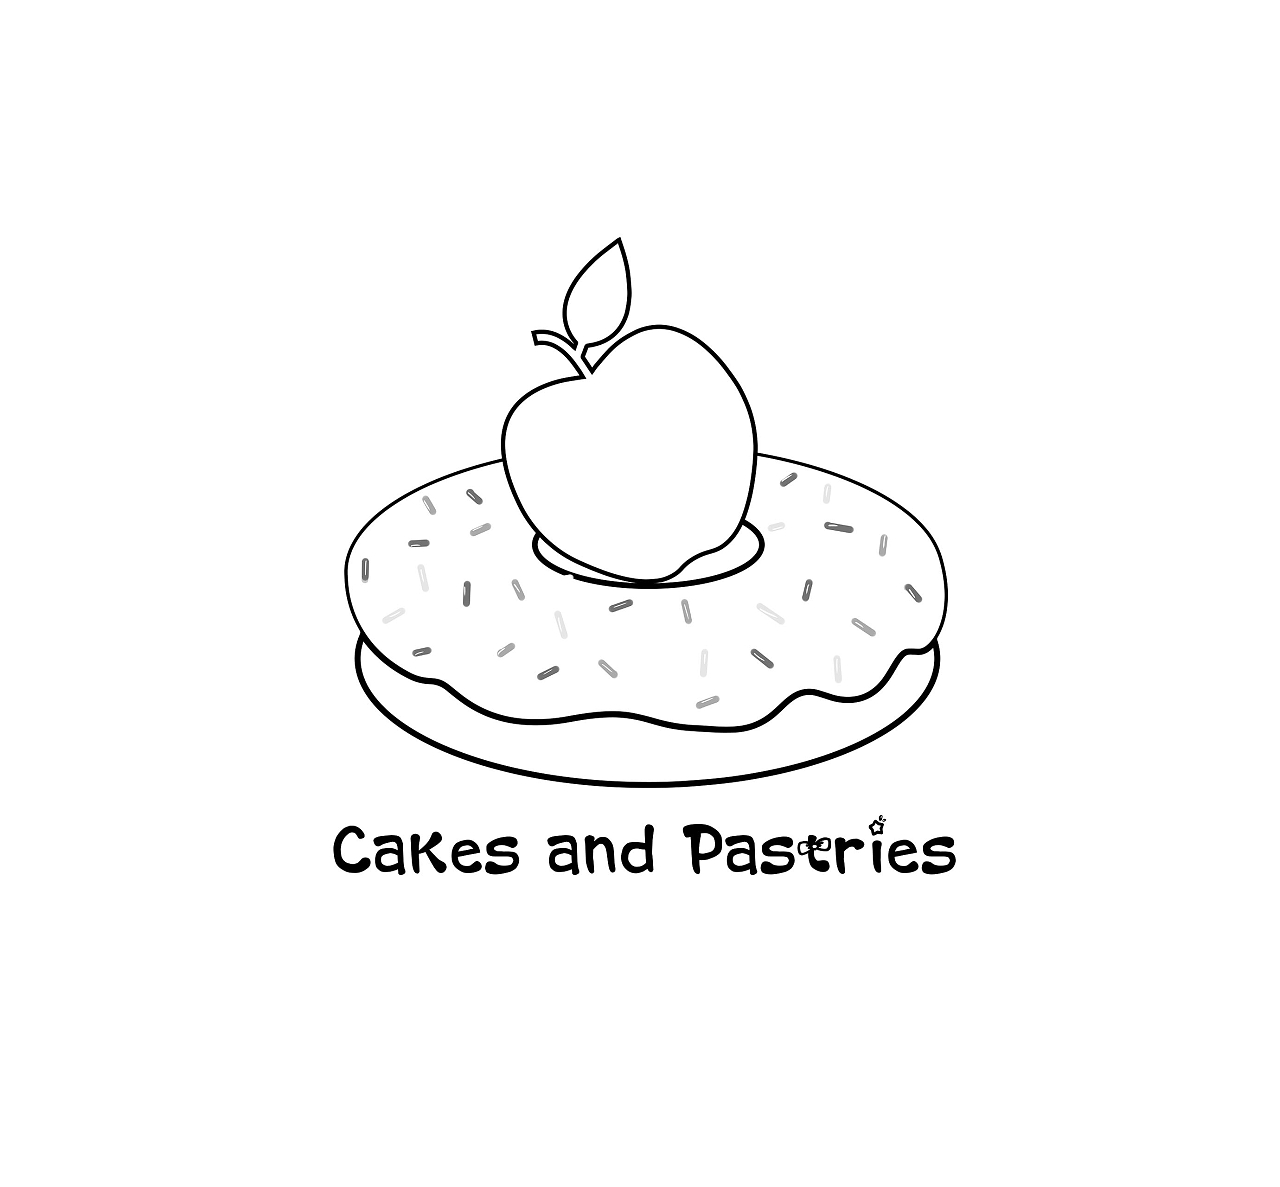 素描勾画处面包圈魅力用苹果点缀突出甜点甜品logo